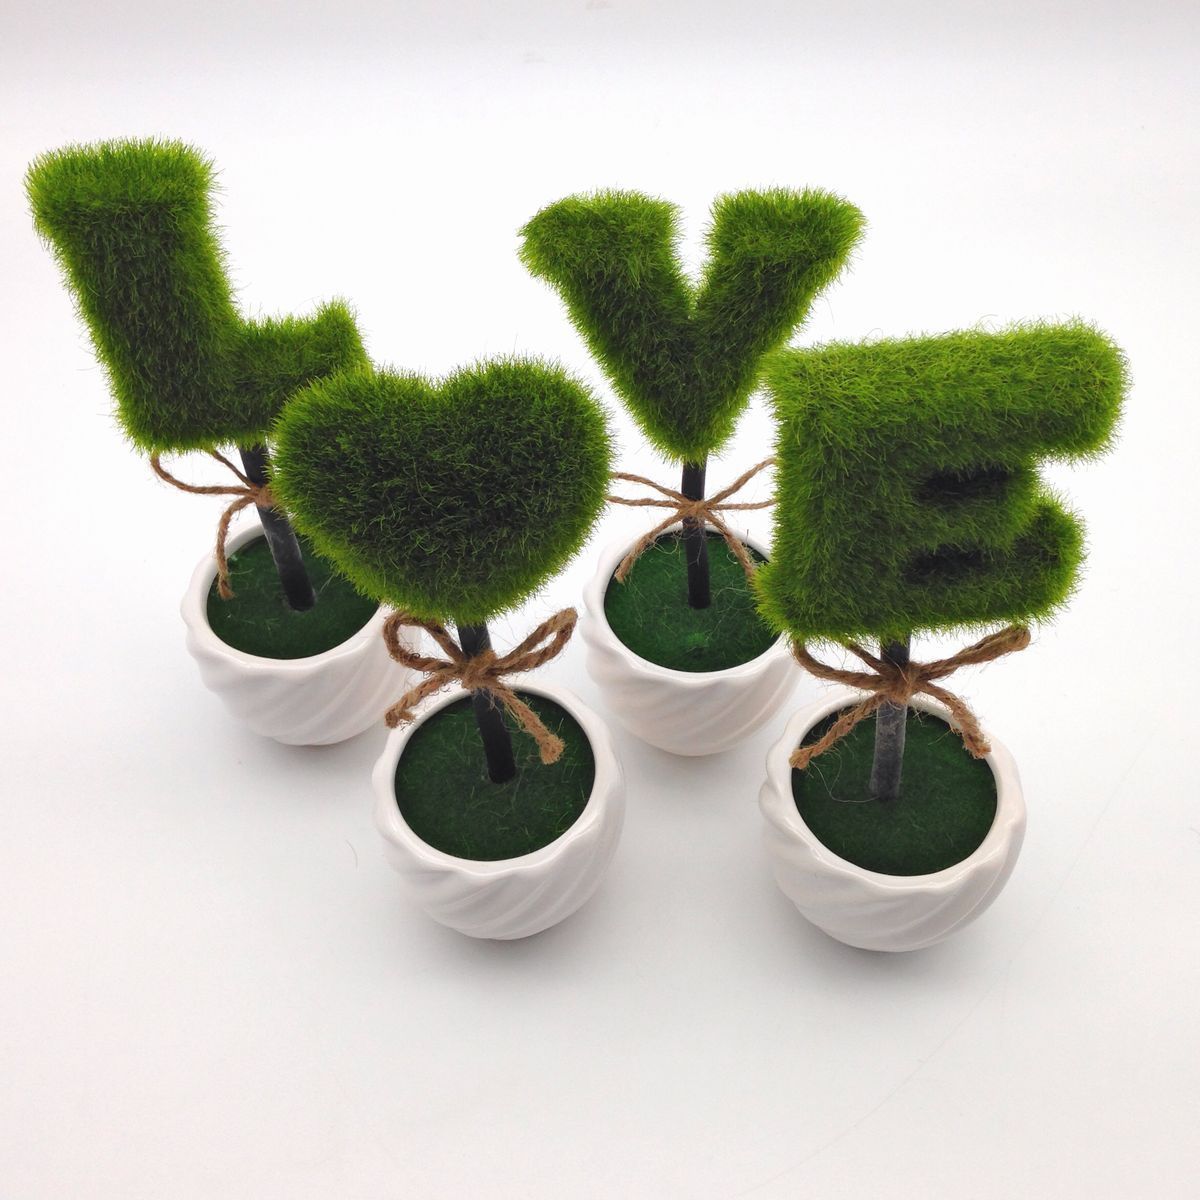  искусственная зелень LOVE Mini декоративное растение белый контейнер 4 шт. комплект 